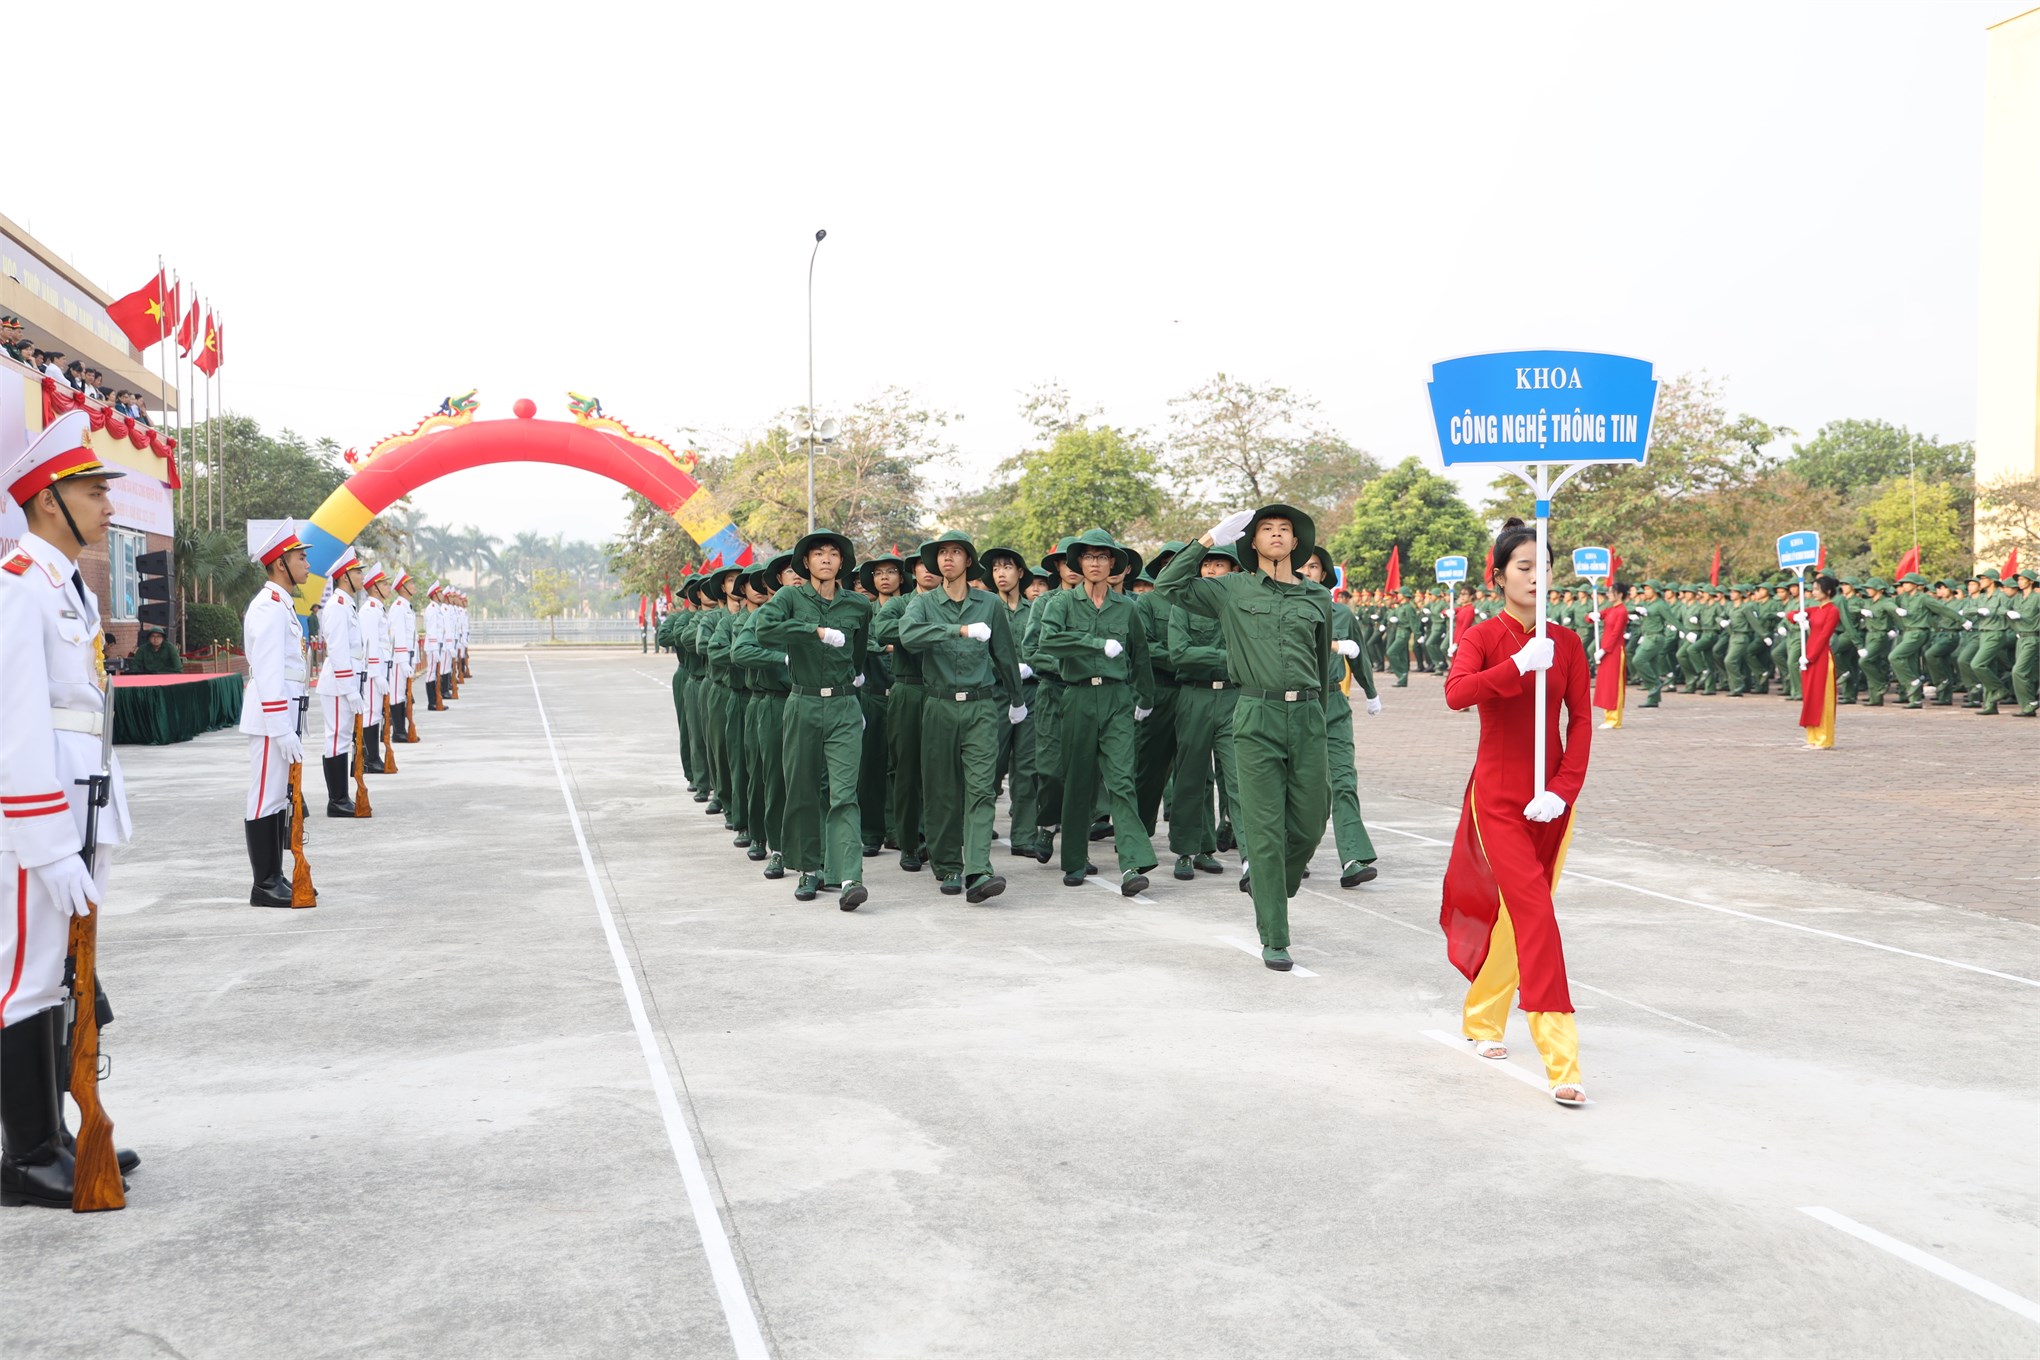 Chương trình diễu hành, duyệt đội ngũ chào mừng khai giảng năm học 2022-2023